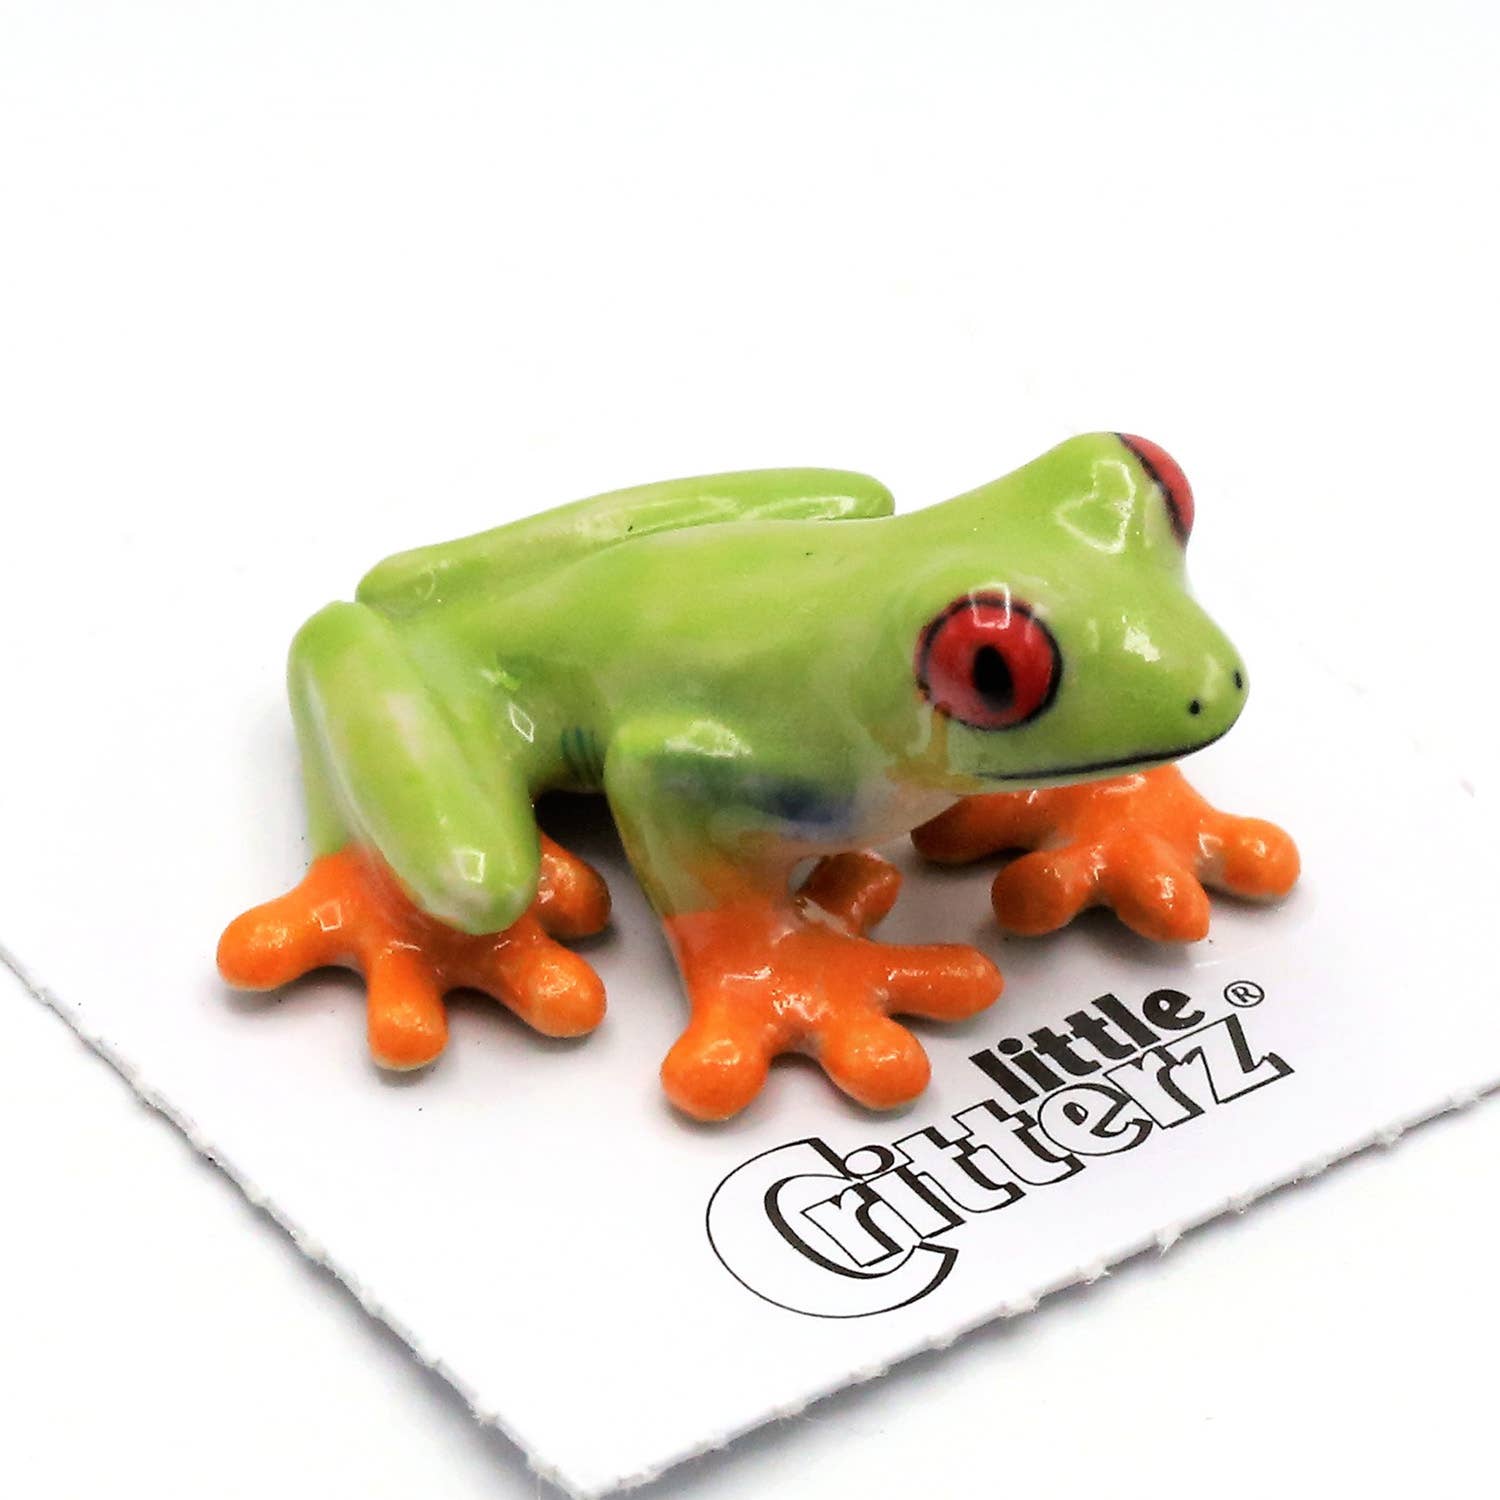 Clinger Red-Eyed Frog Porcelain Miniature